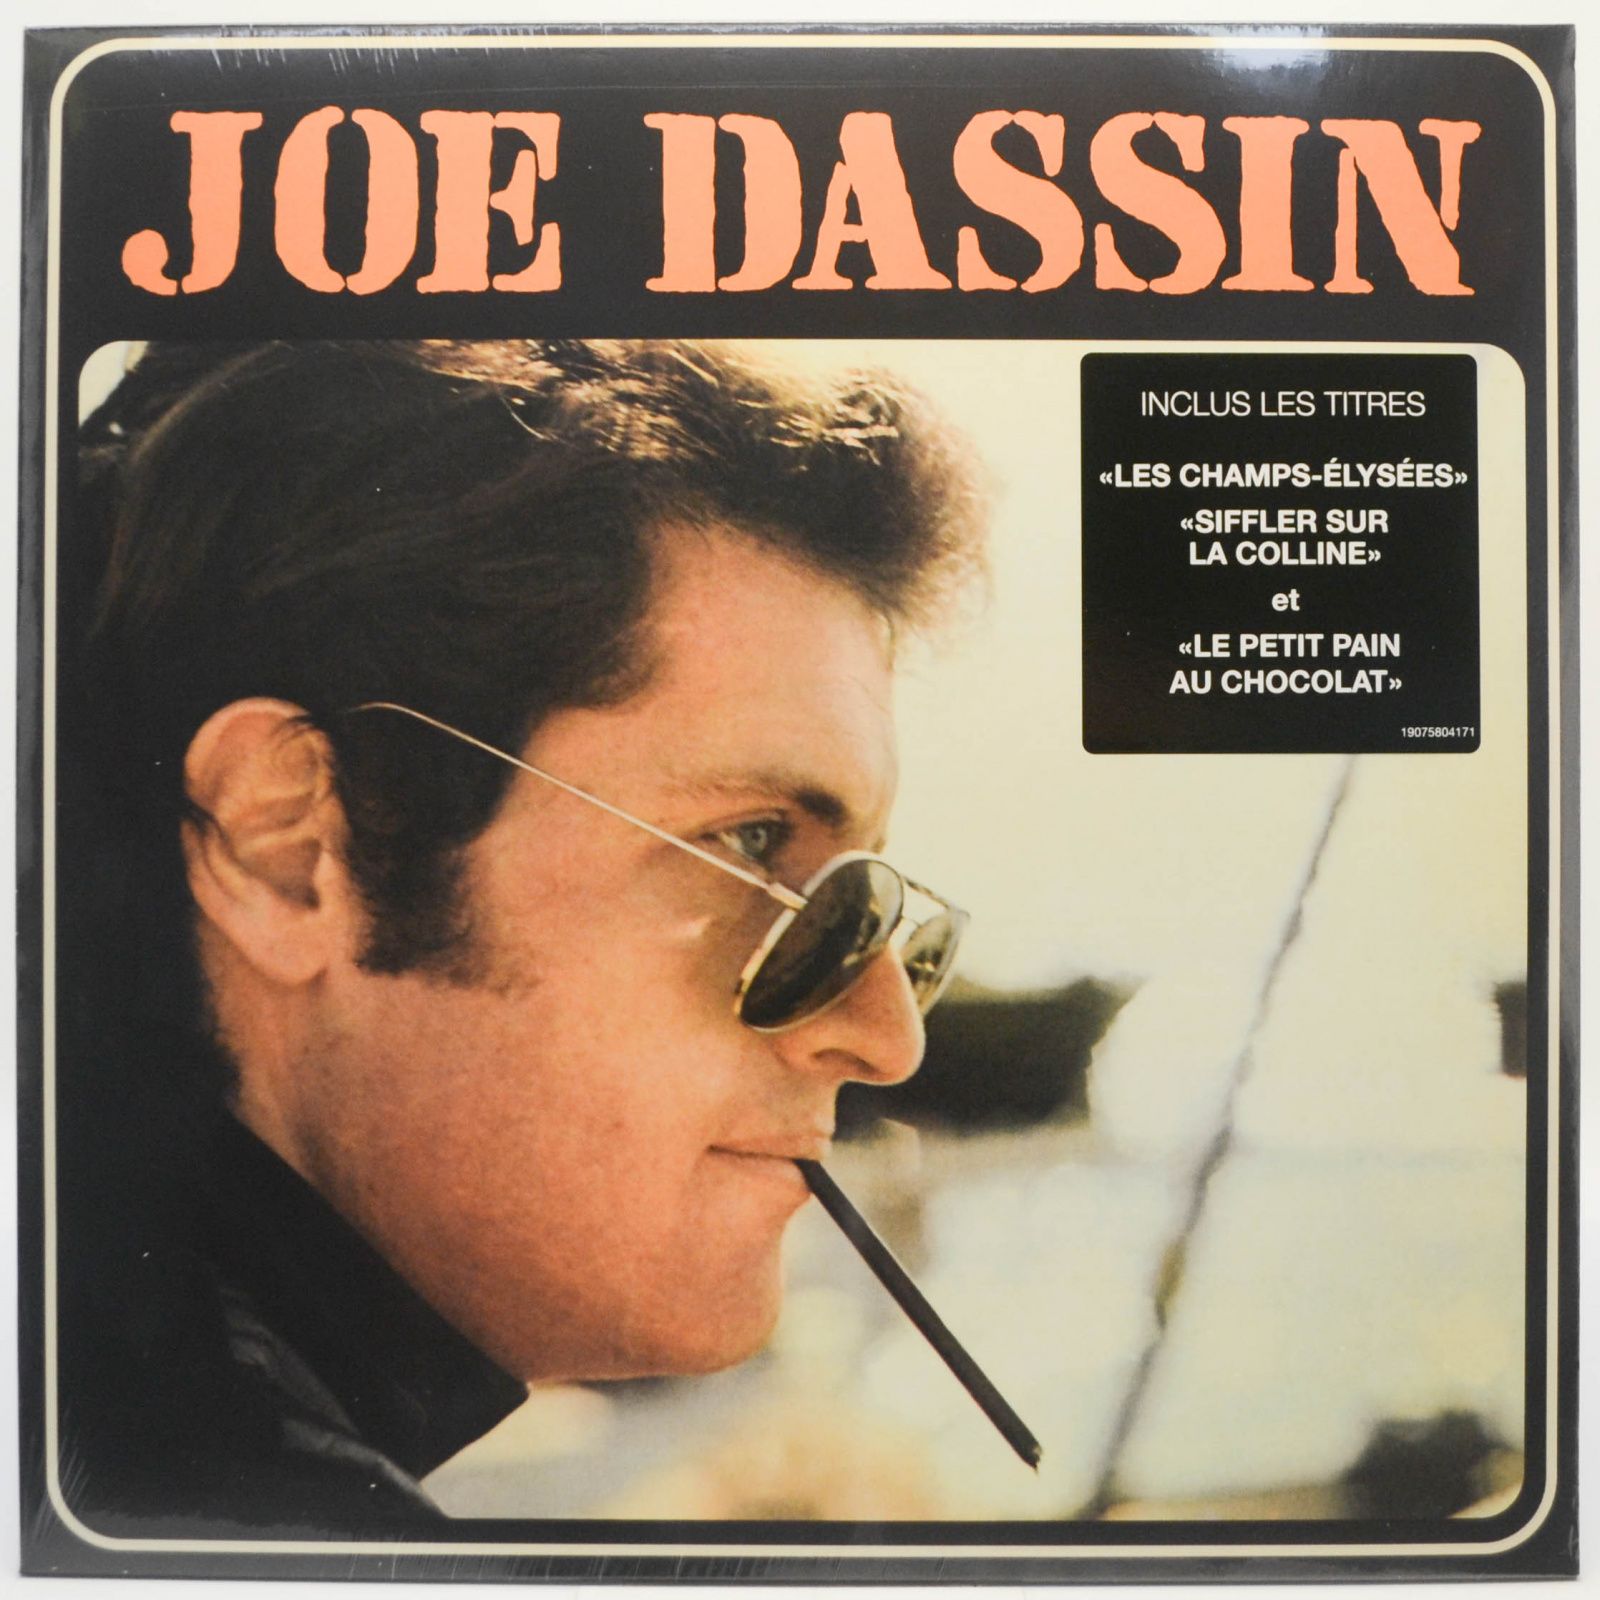 Joe Dassin — Joe Dassin, 2018